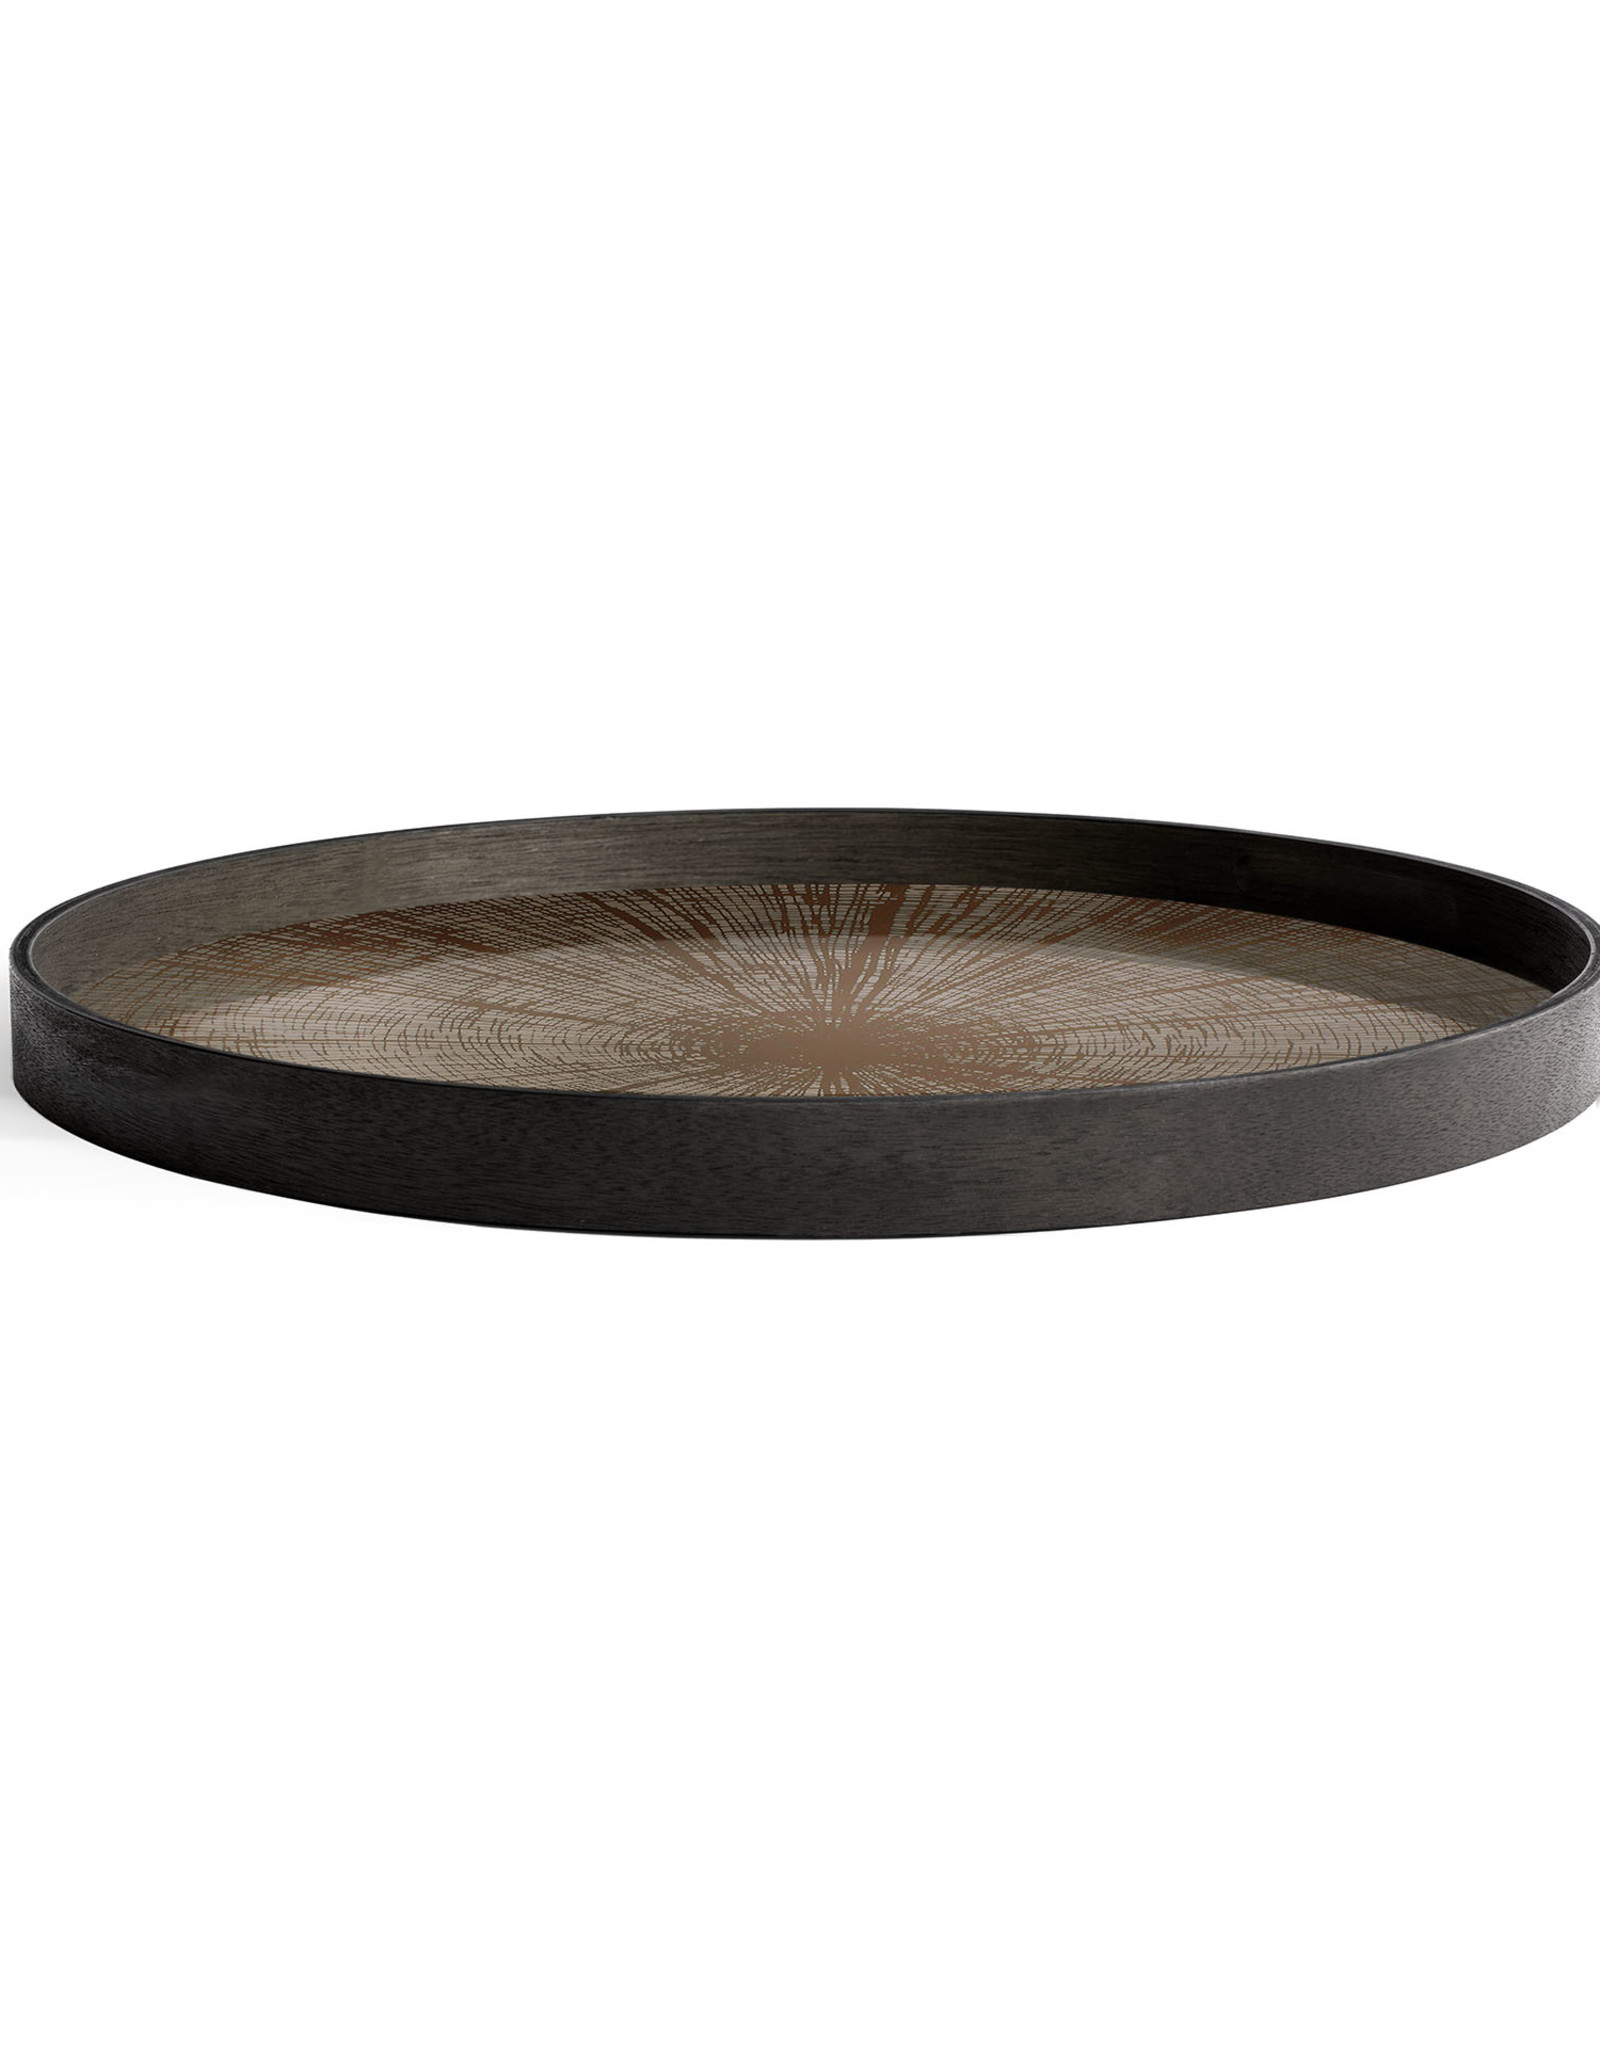 Bronze Slice mirror tray - not aged - round - L